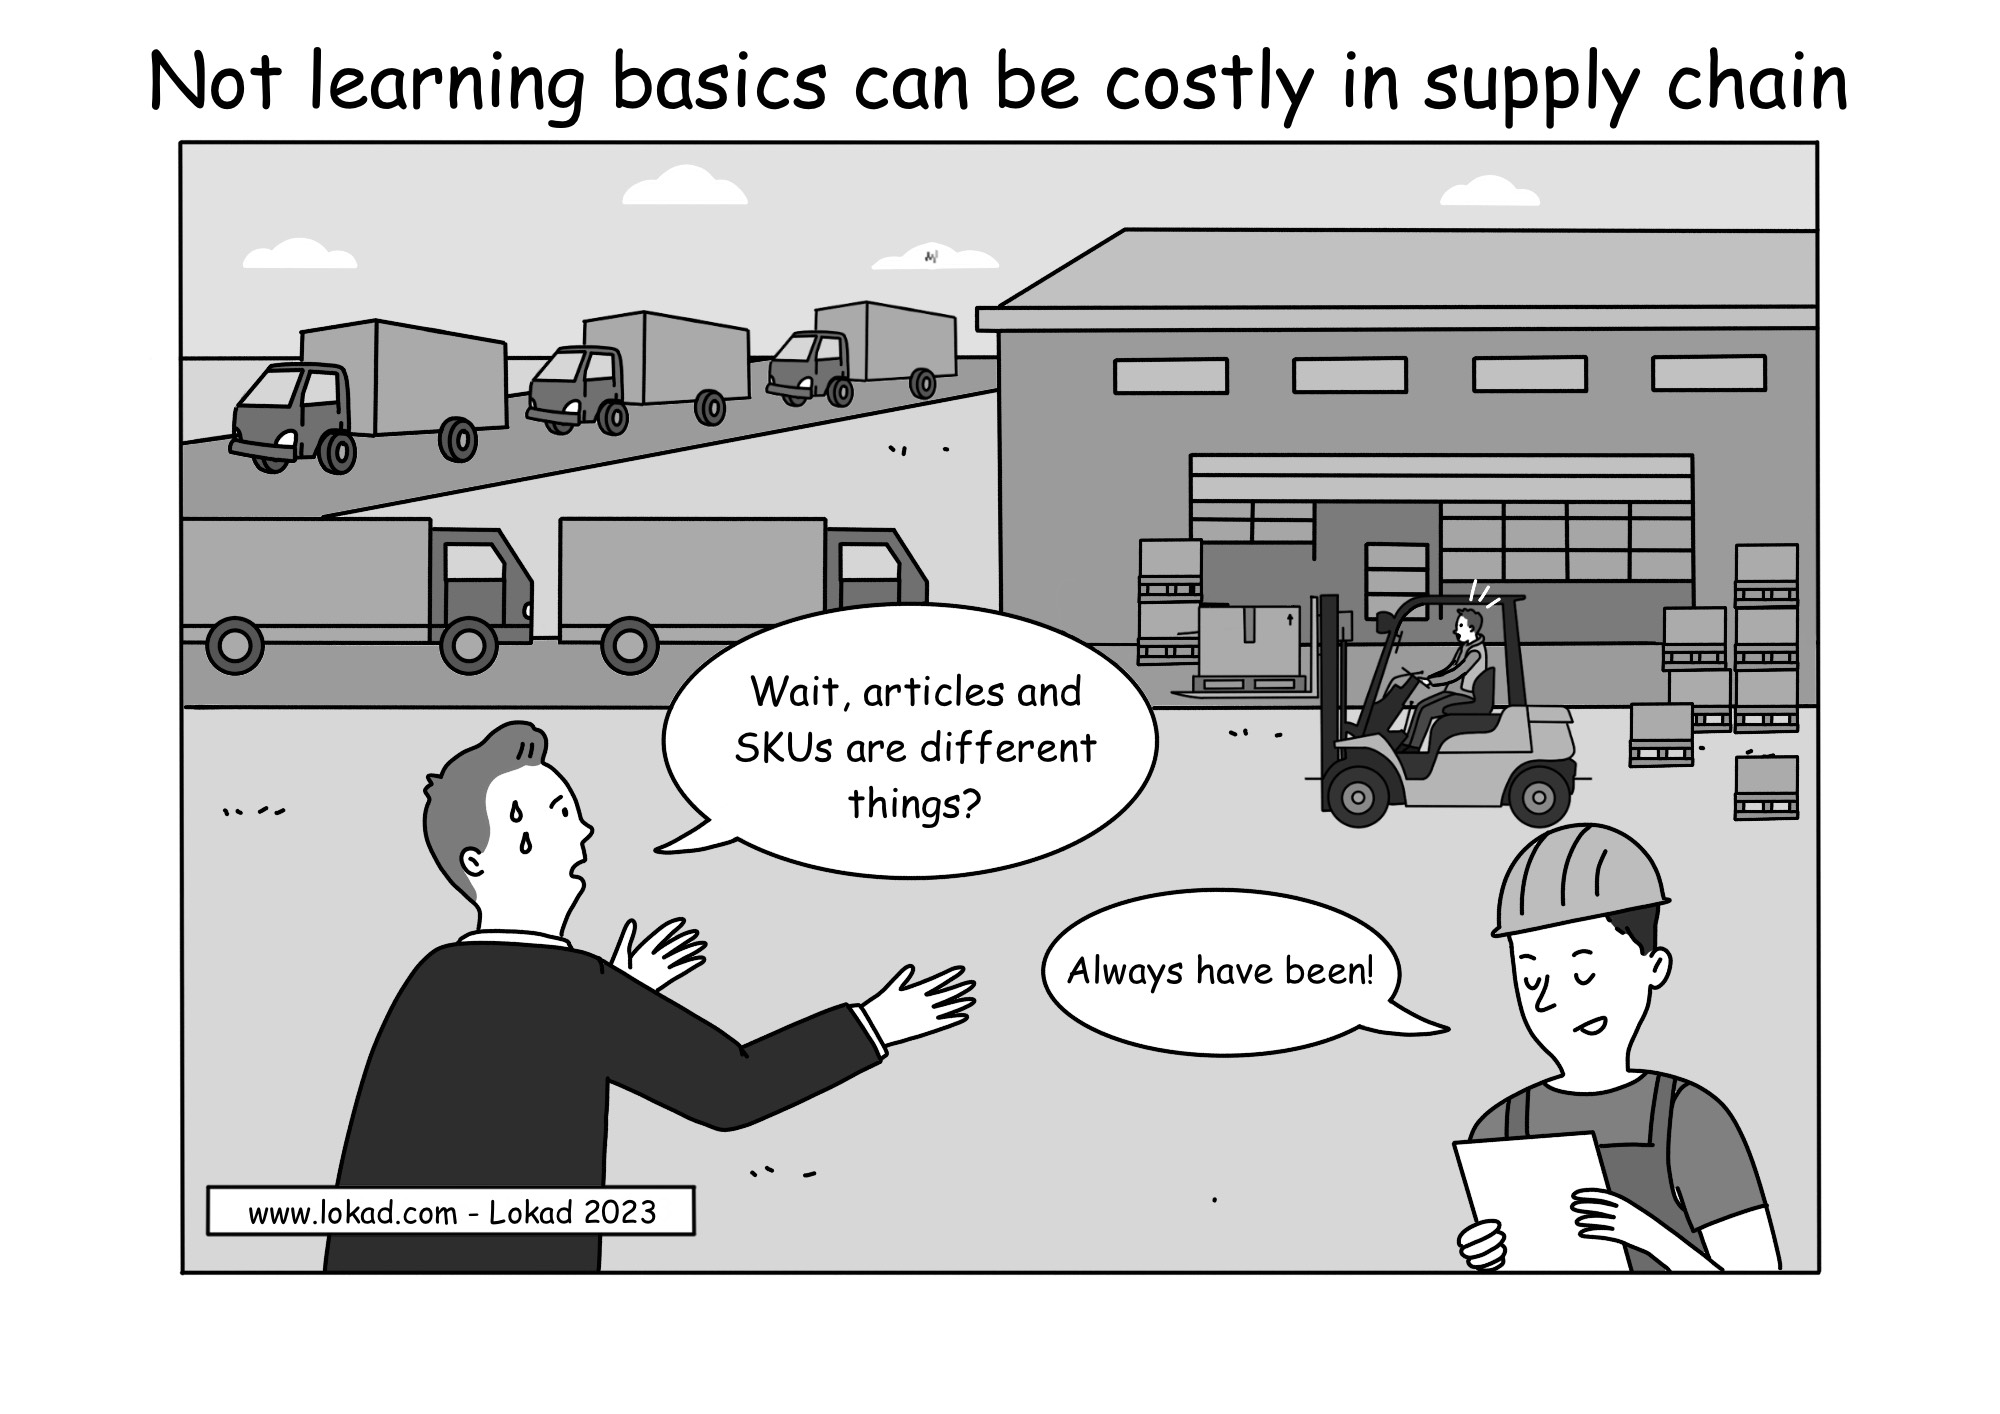 Das Nichtlernen der Grundlagen kann in der Supply Chain teuer sein